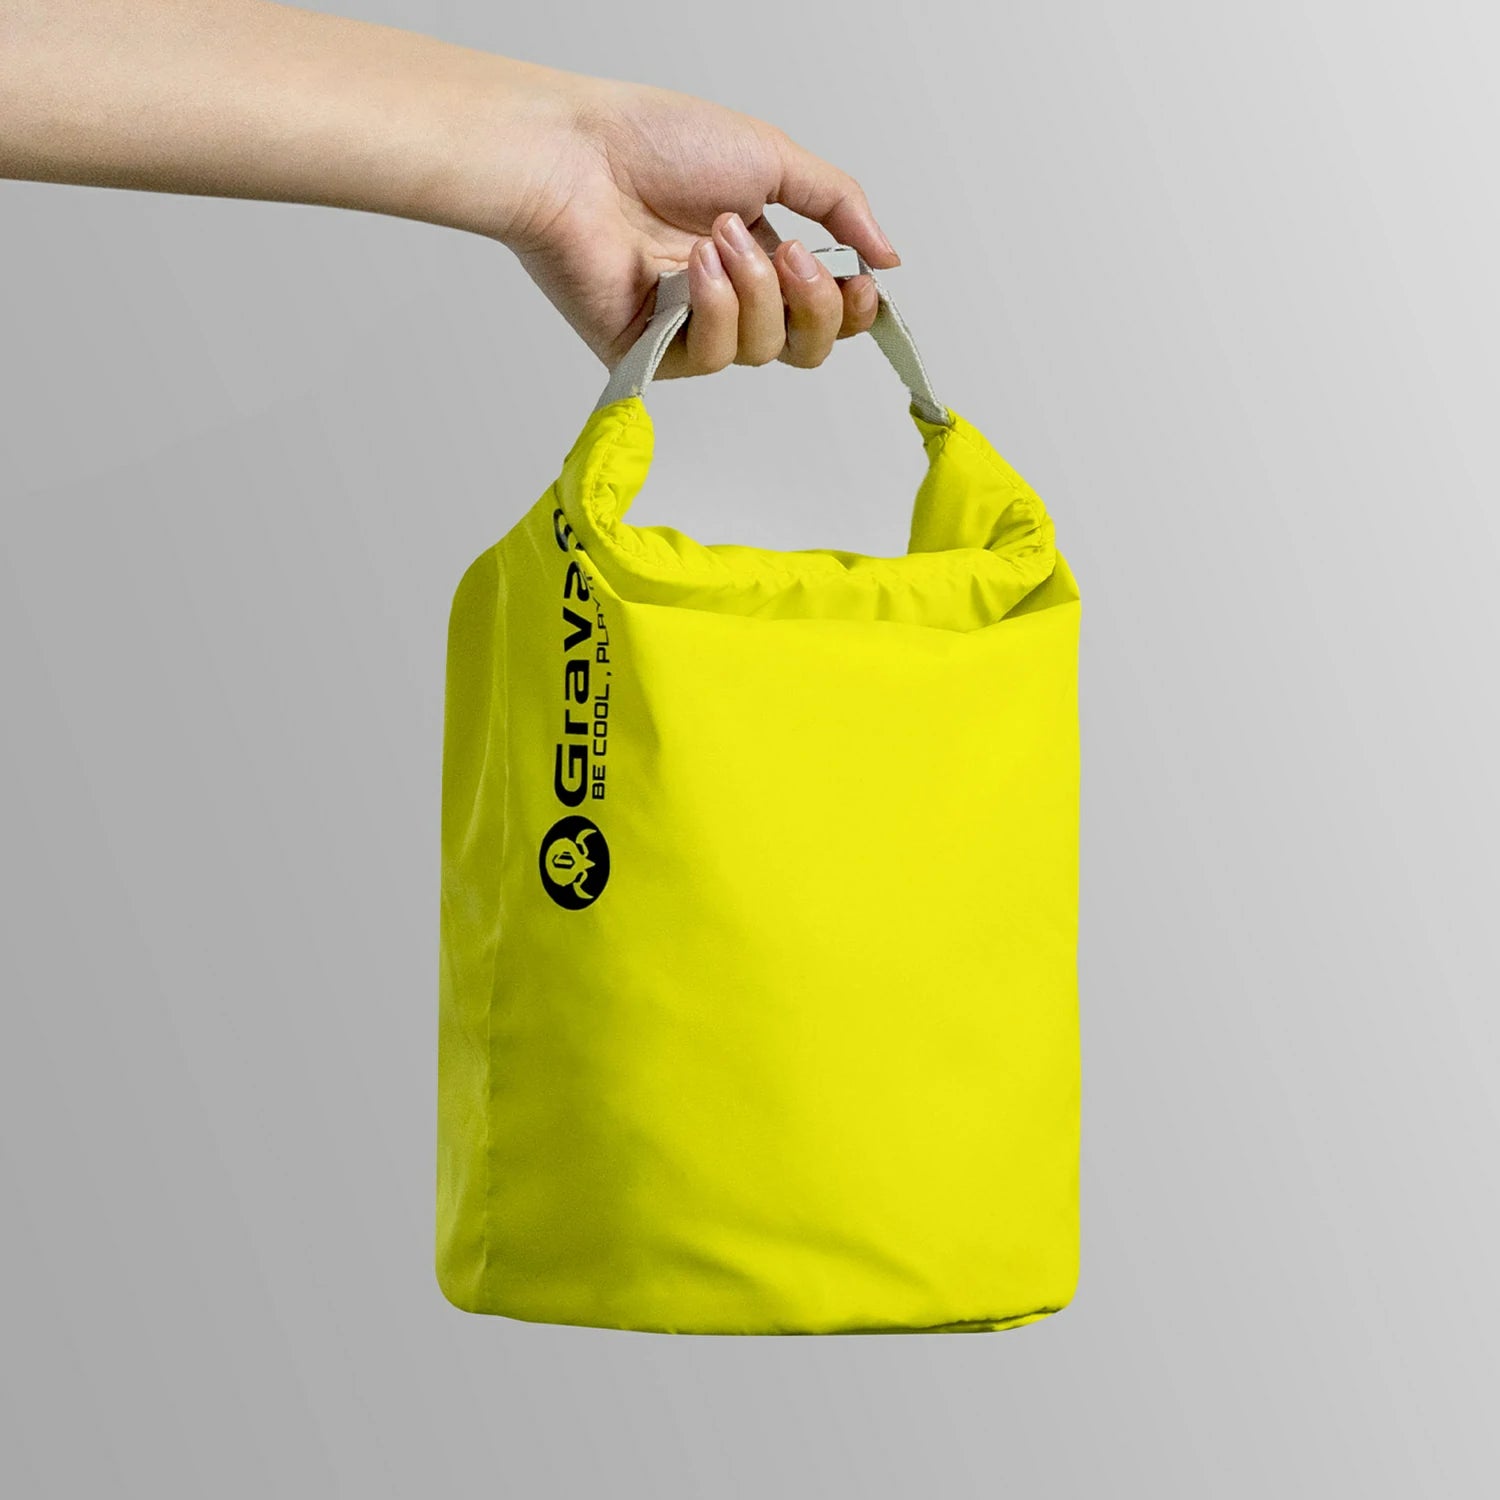 GravaGo Gear Bag